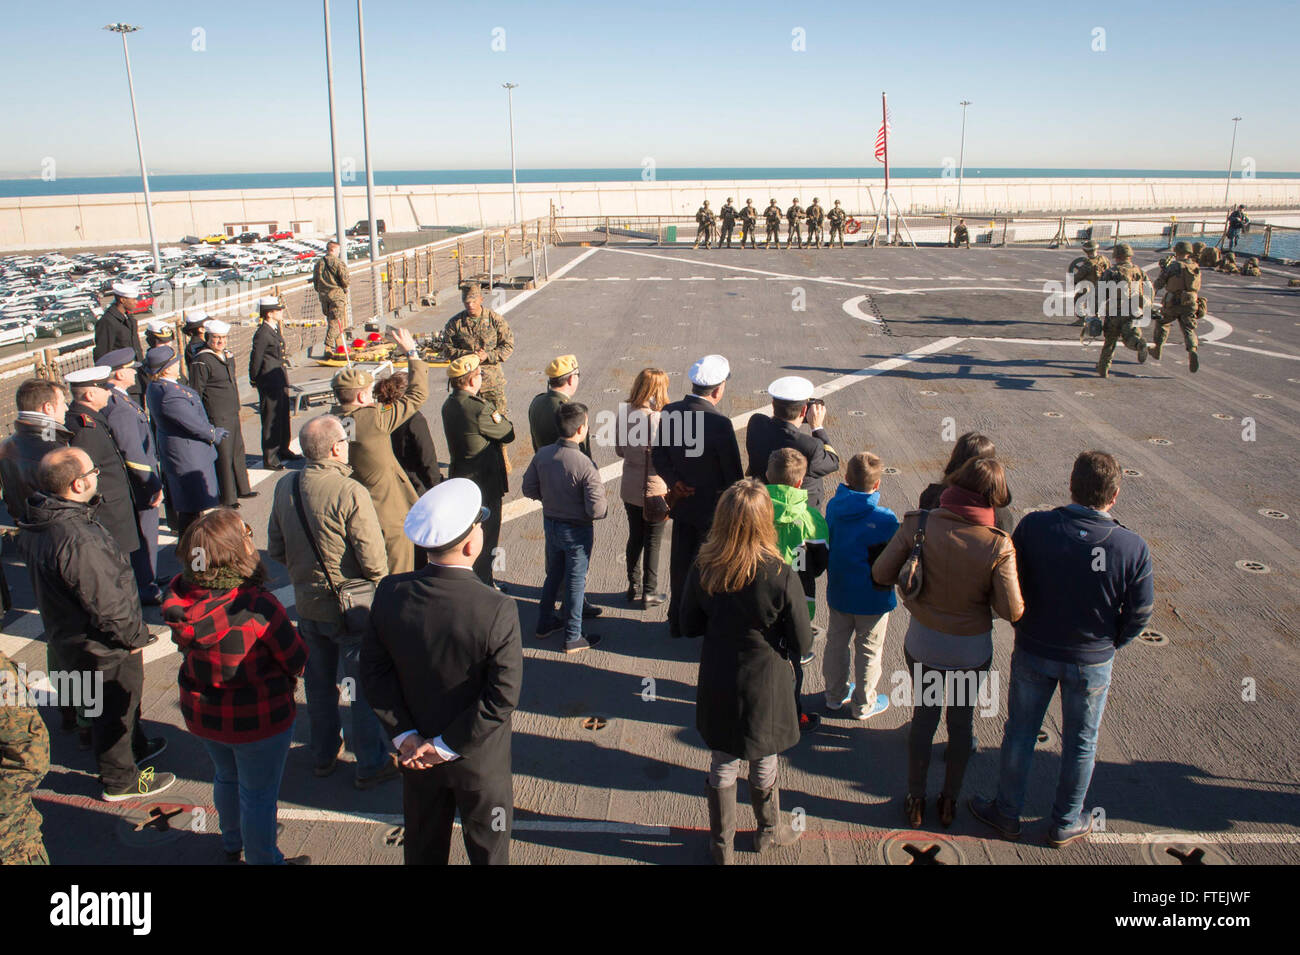 VALENCIA , SPAGNA (dec. n. 31, 2014) spagnolo funzionari militari e l'AMBASCIATA DEGLI STATI UNITI di visitatori osservare una dimostrazione di marines della XXIV Marine Expeditionary Unit sul ponte di volo dell'Whidbey Island-classe dock anfibio sbarco nave USS Fort McHenry (LSD 43) Dic. 31, 2014. Fort McHenry, parte dell'Iwo Jima anfibio gruppo pronto/24th Marine Expeditionary Unit, sta conducendo operazioni navali negli Stati Uniti Sesta flotta area di operazioni a sostegno degli Stati Uniti per gli interessi di sicurezza nazionali in Europa. Foto Stock